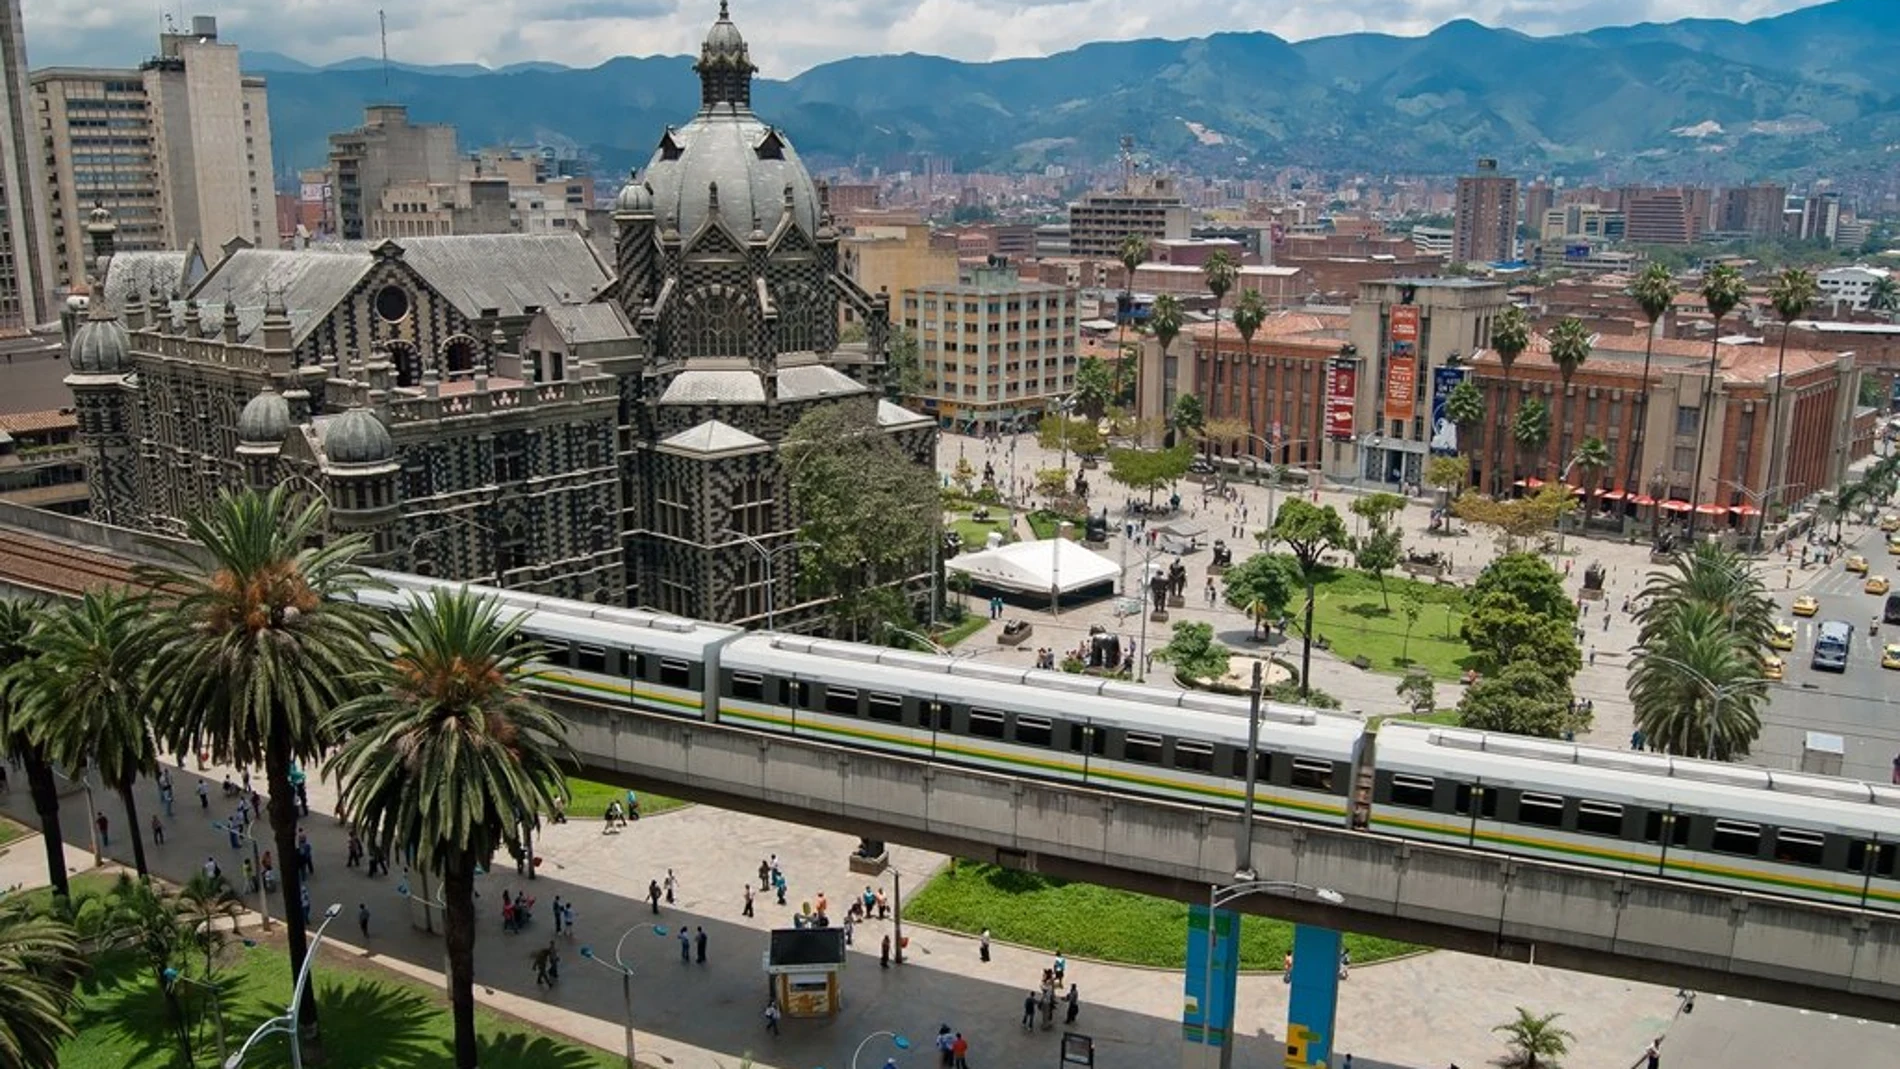 Medellín es la cuna del escultor Fernando Botero, que ha donado buena parte de su obra a la ciudad. La plaza que lleva su nombre y el Museo de Antioquia son los principales atractivos para los visitantes.